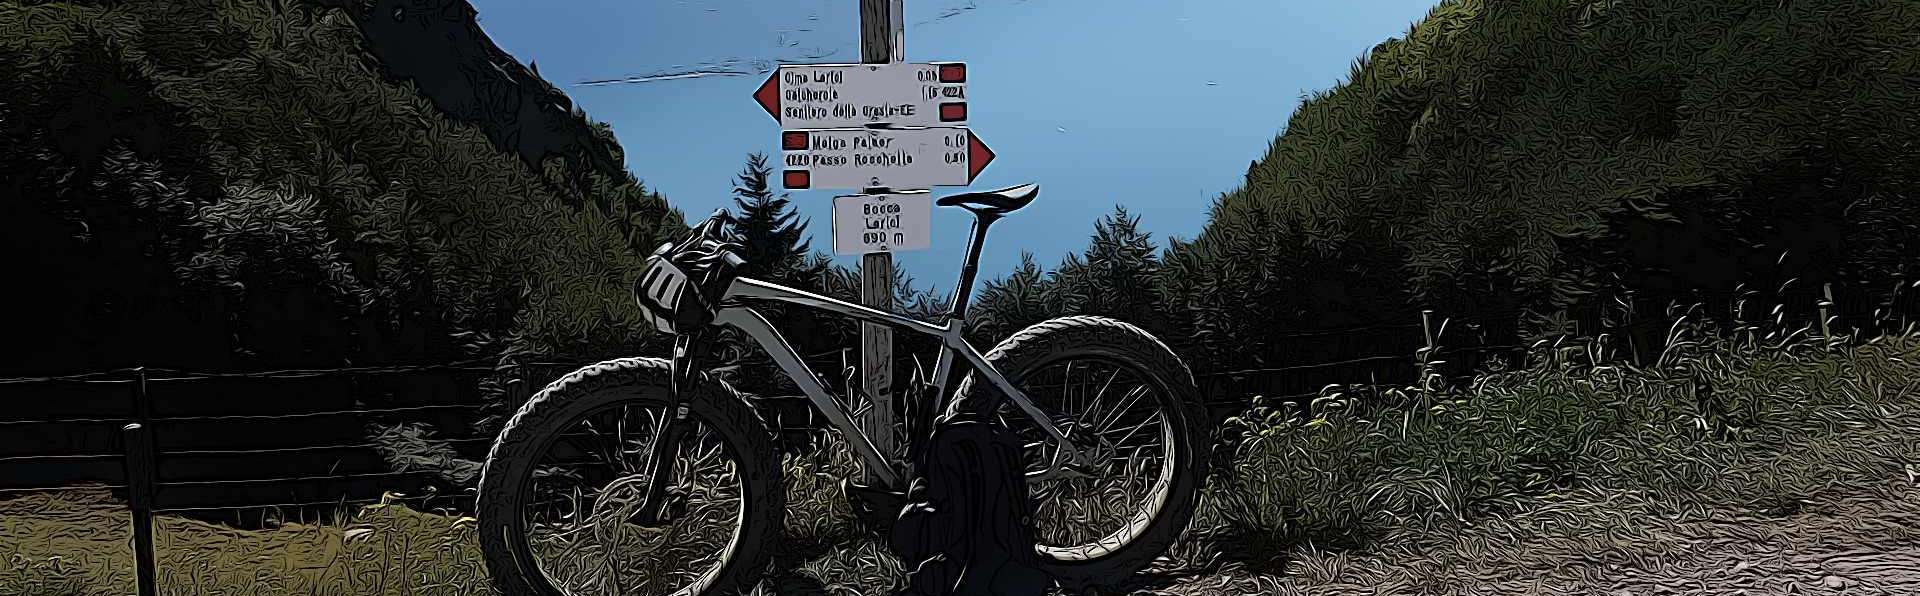 Radfahren am Gardasee - Radrouten im Trentino